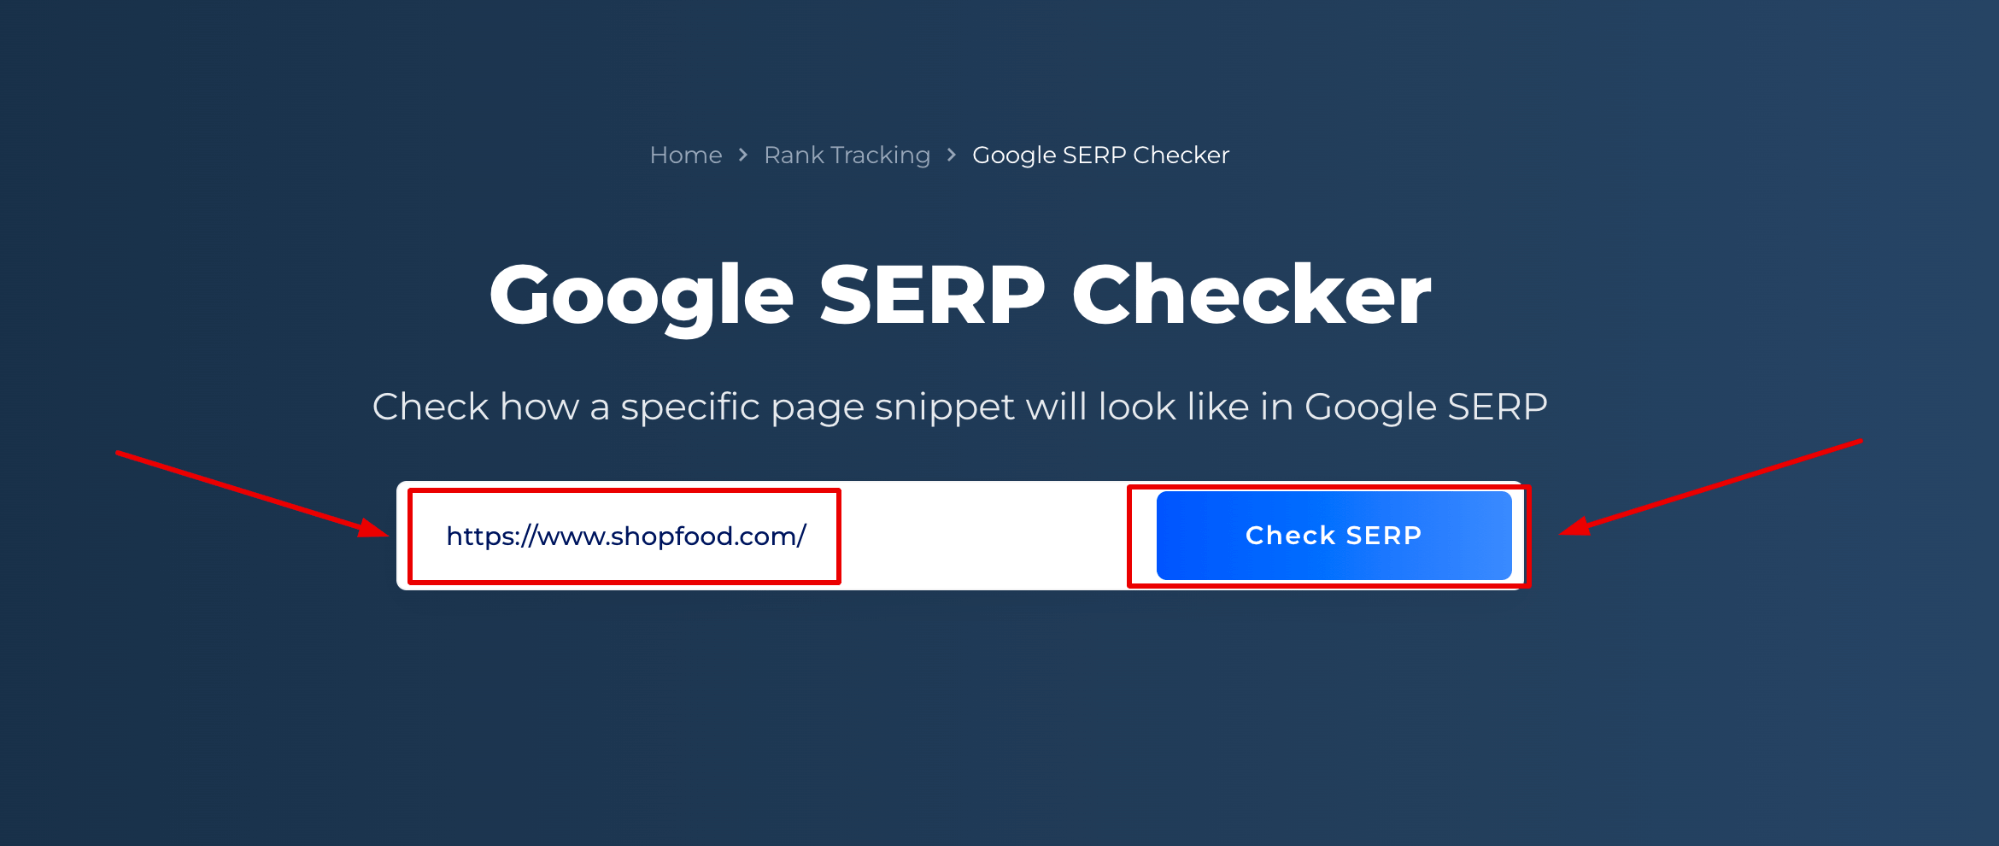 Google SERP Checker